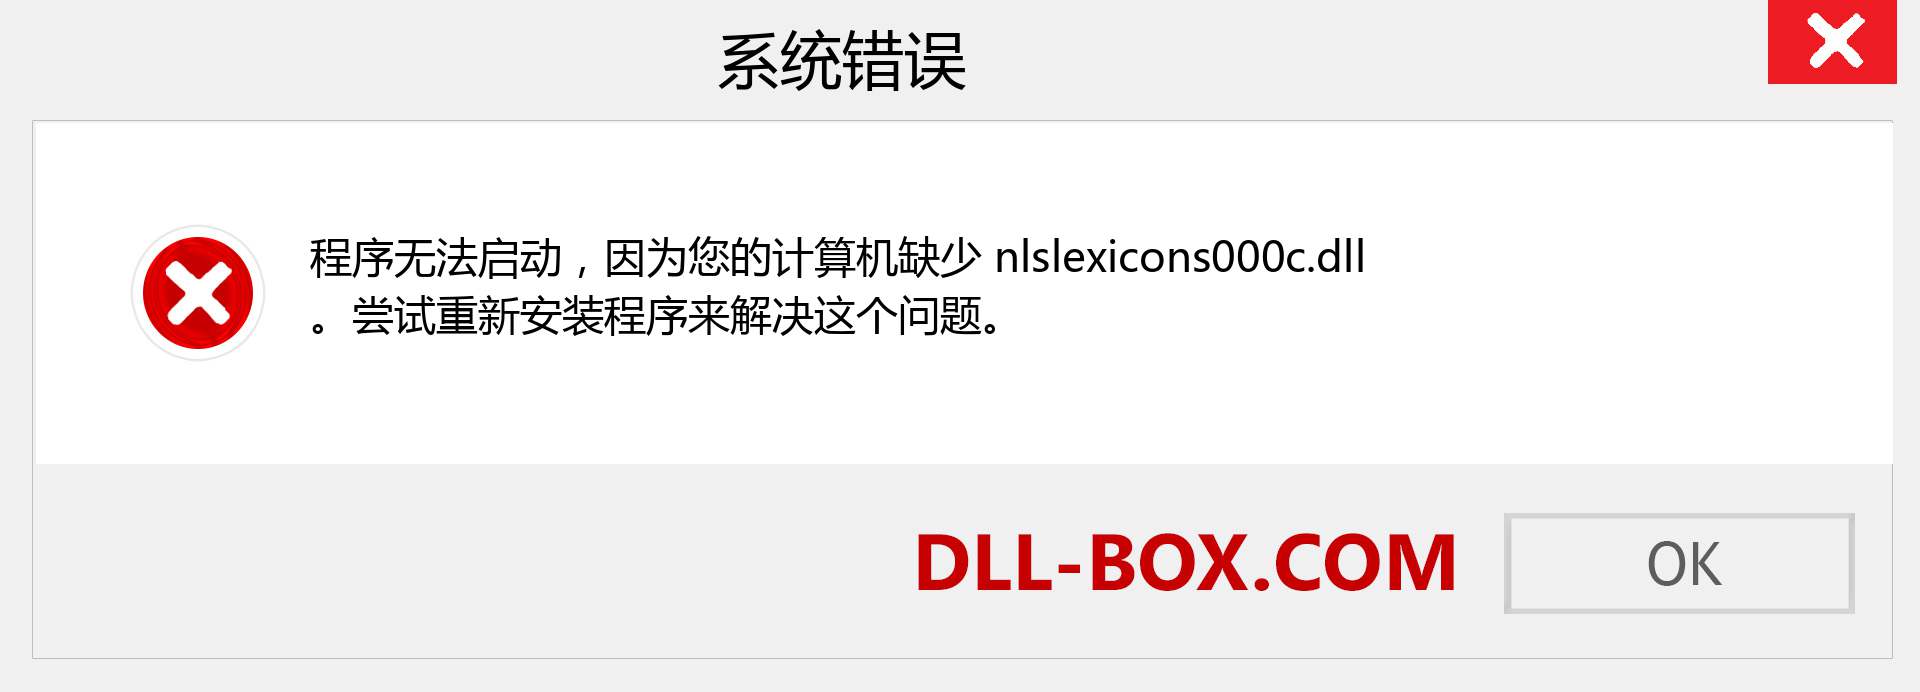 nlslexicons000c.dll 文件丢失？。 适用于 Windows 7、8、10 的下载 - 修复 Windows、照片、图像上的 nlslexicons000c dll 丢失错误